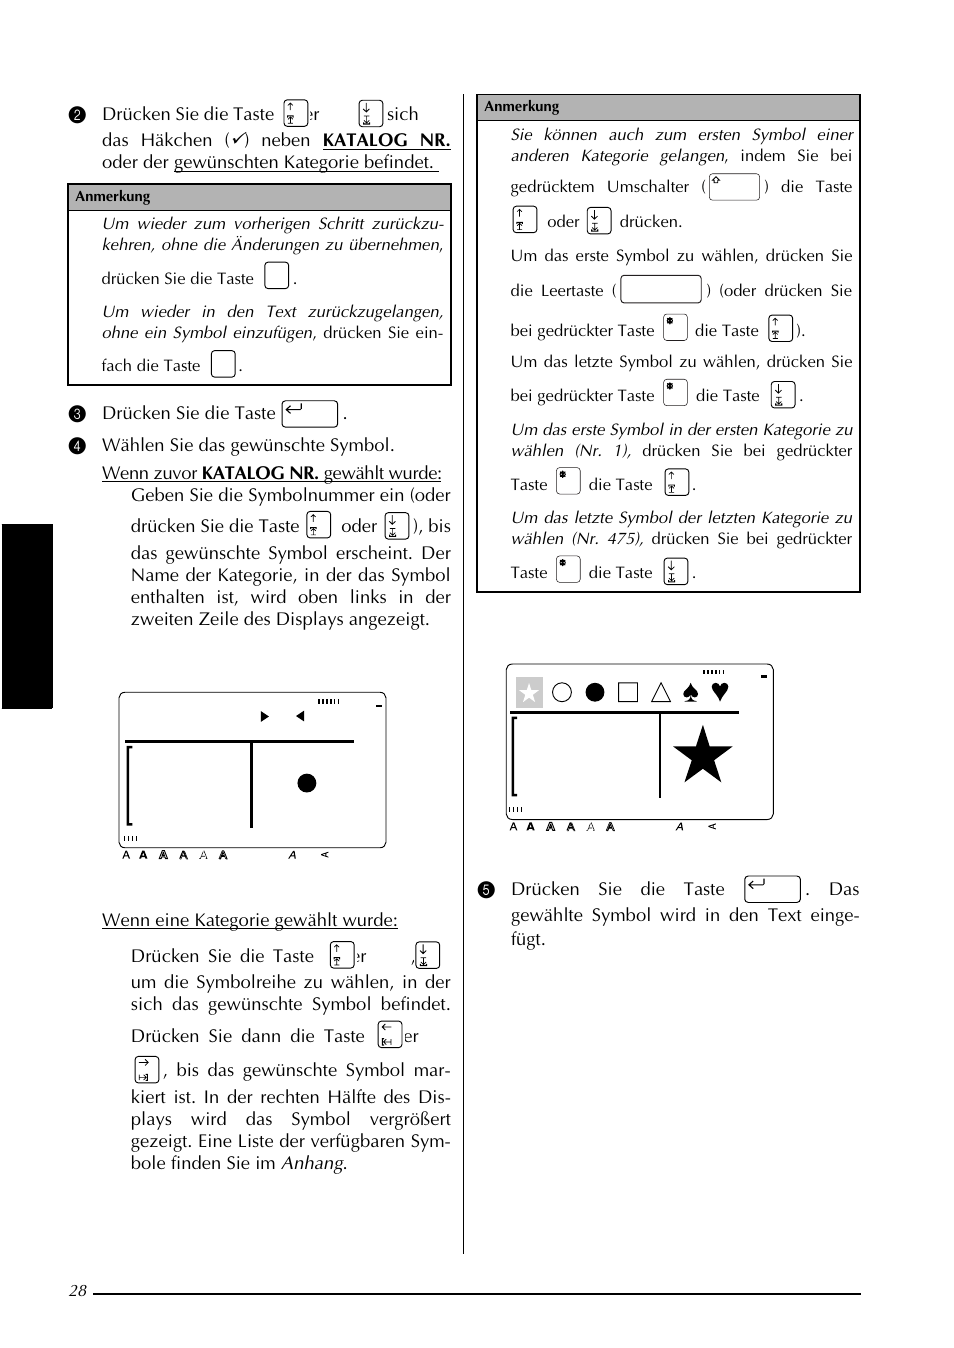 Zeichen/symbole eingabe-nr. 1, Kapitel 3 funktionen | Brother PT-9400 Benutzerhandbuch | Seite 36 / 127